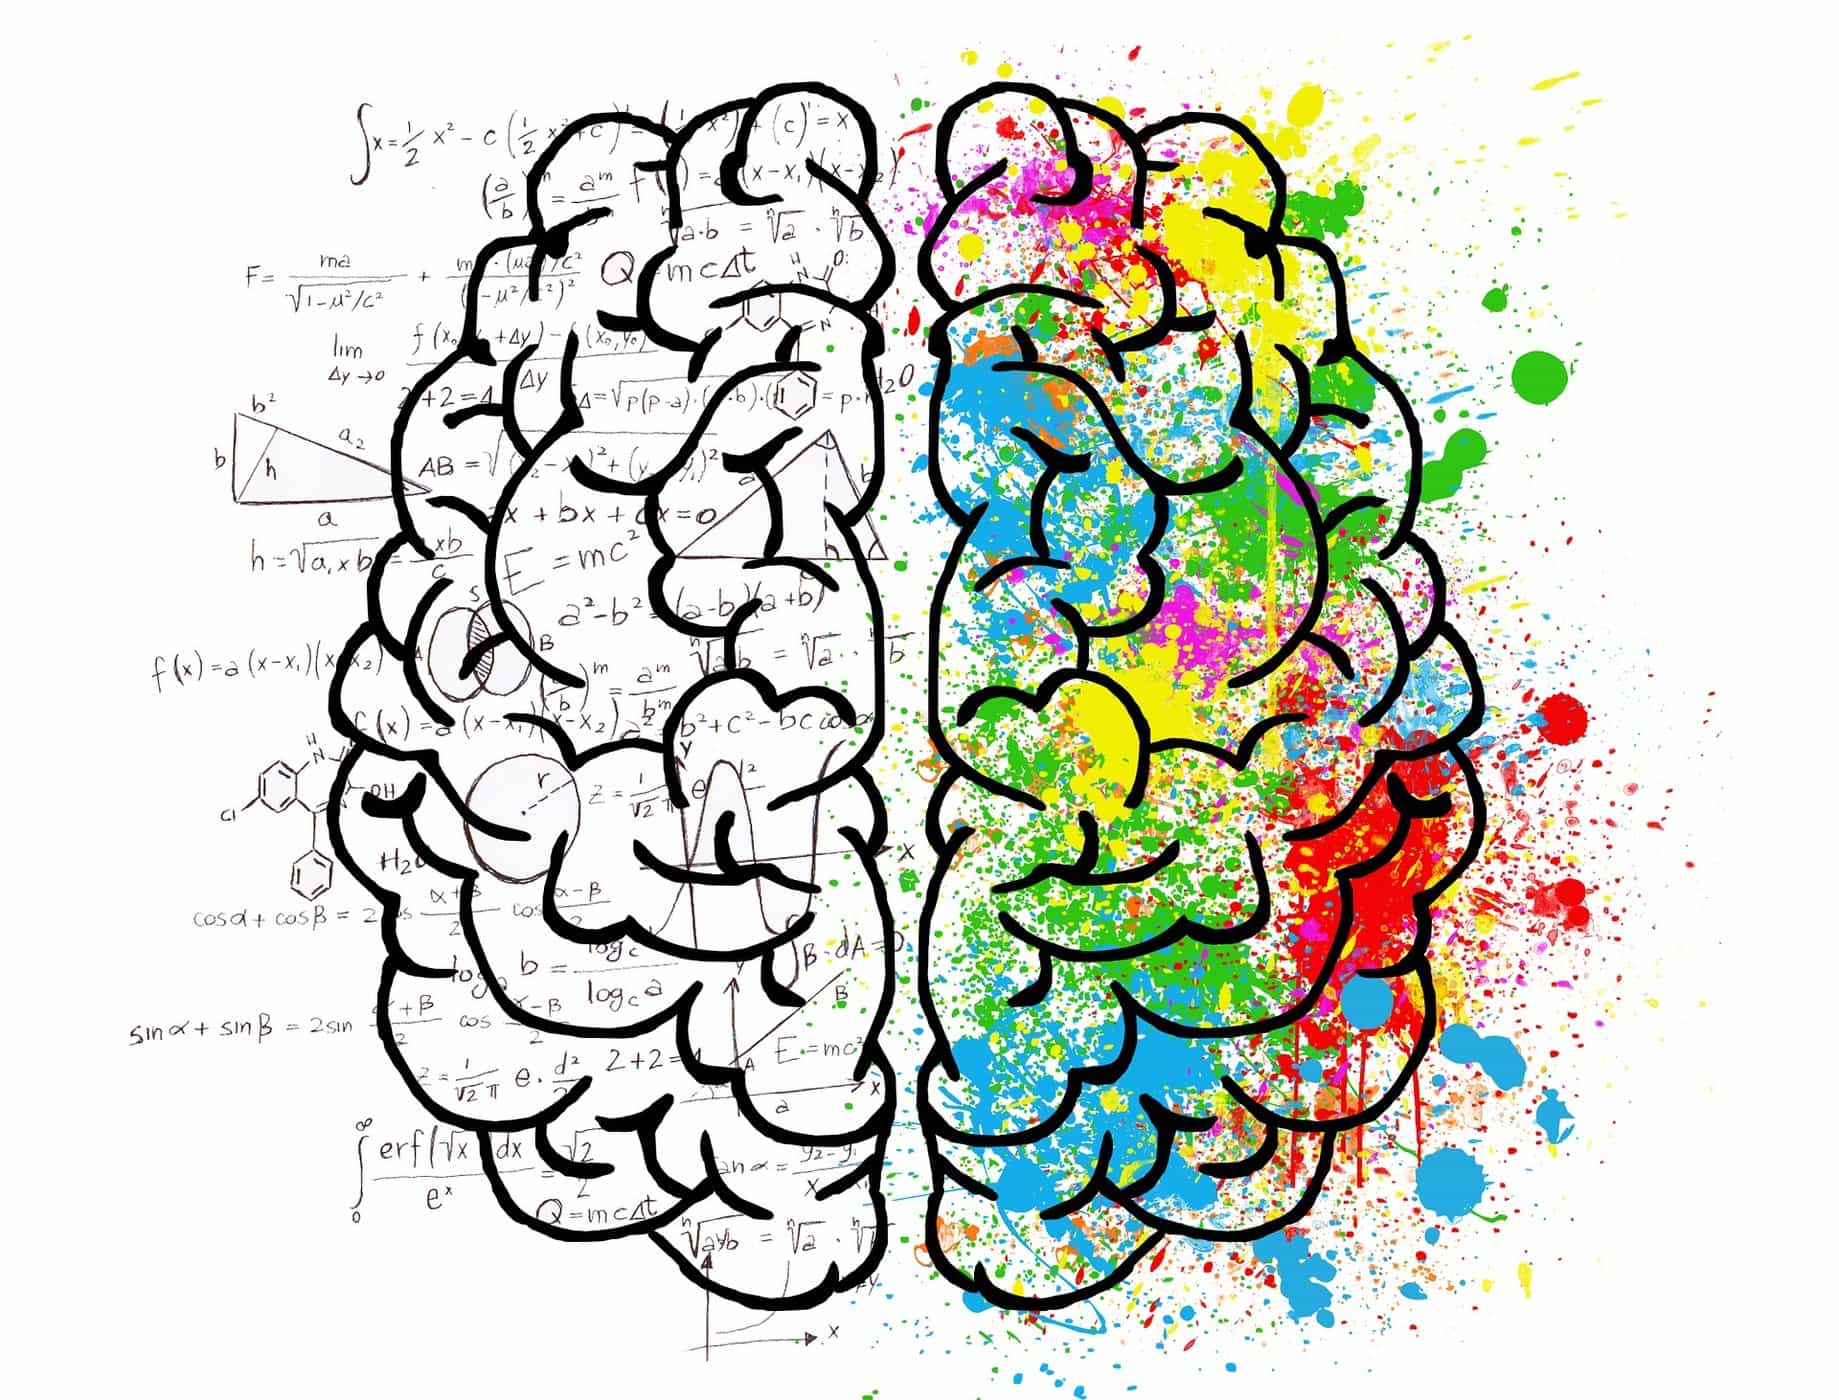 Benarkah Fungsi Otak Kanan dan Otak Kiri Berbeda? Apa Saja Perbedaannya?